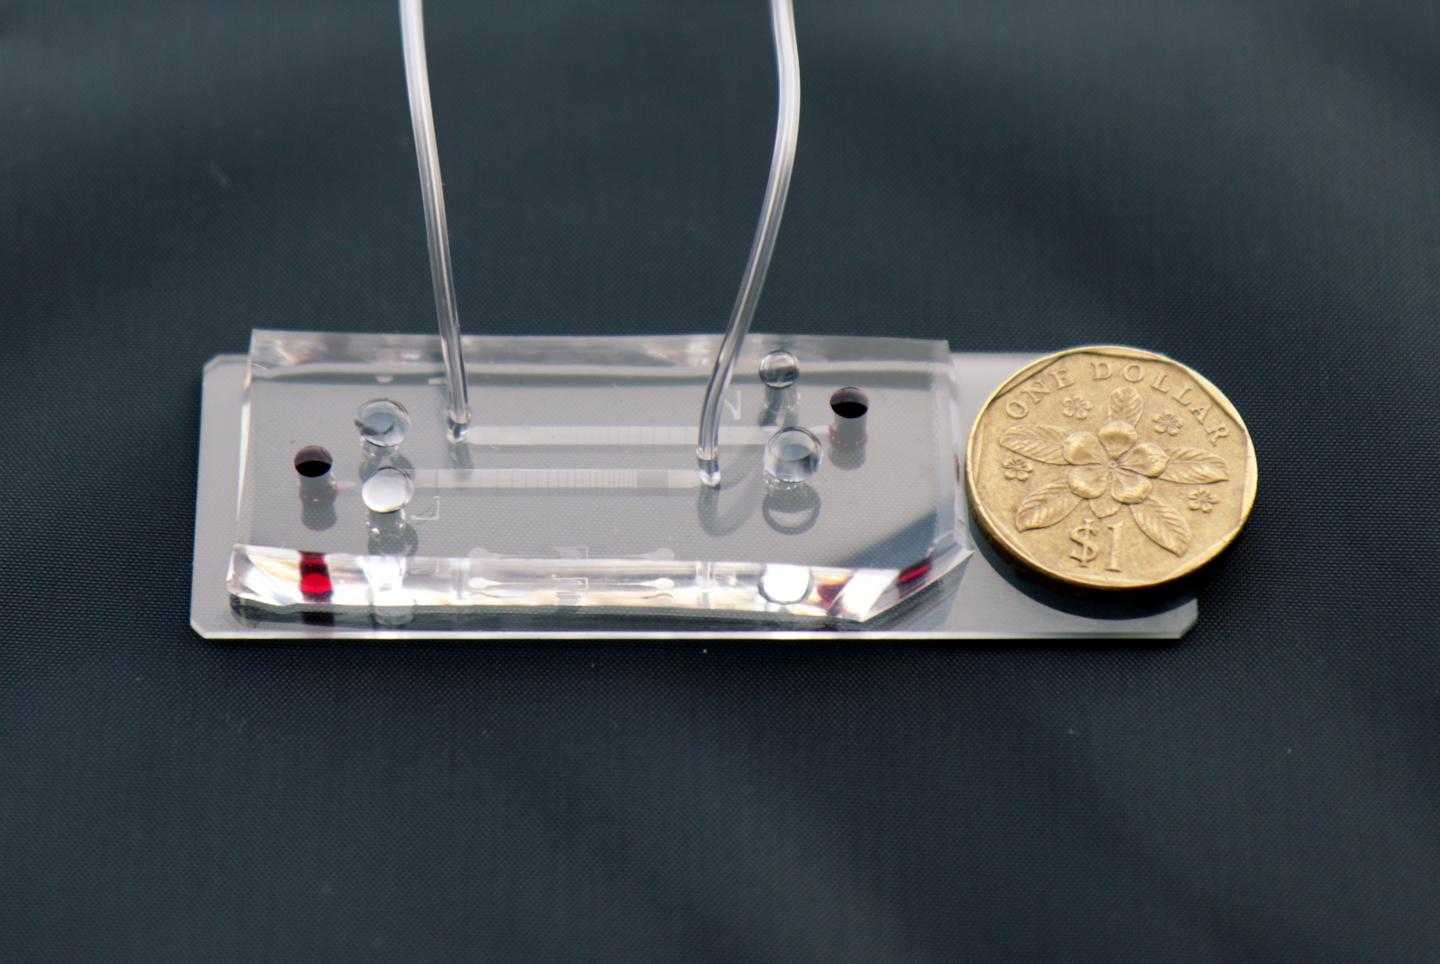 A closeup of the microfluidic DLD assay chip